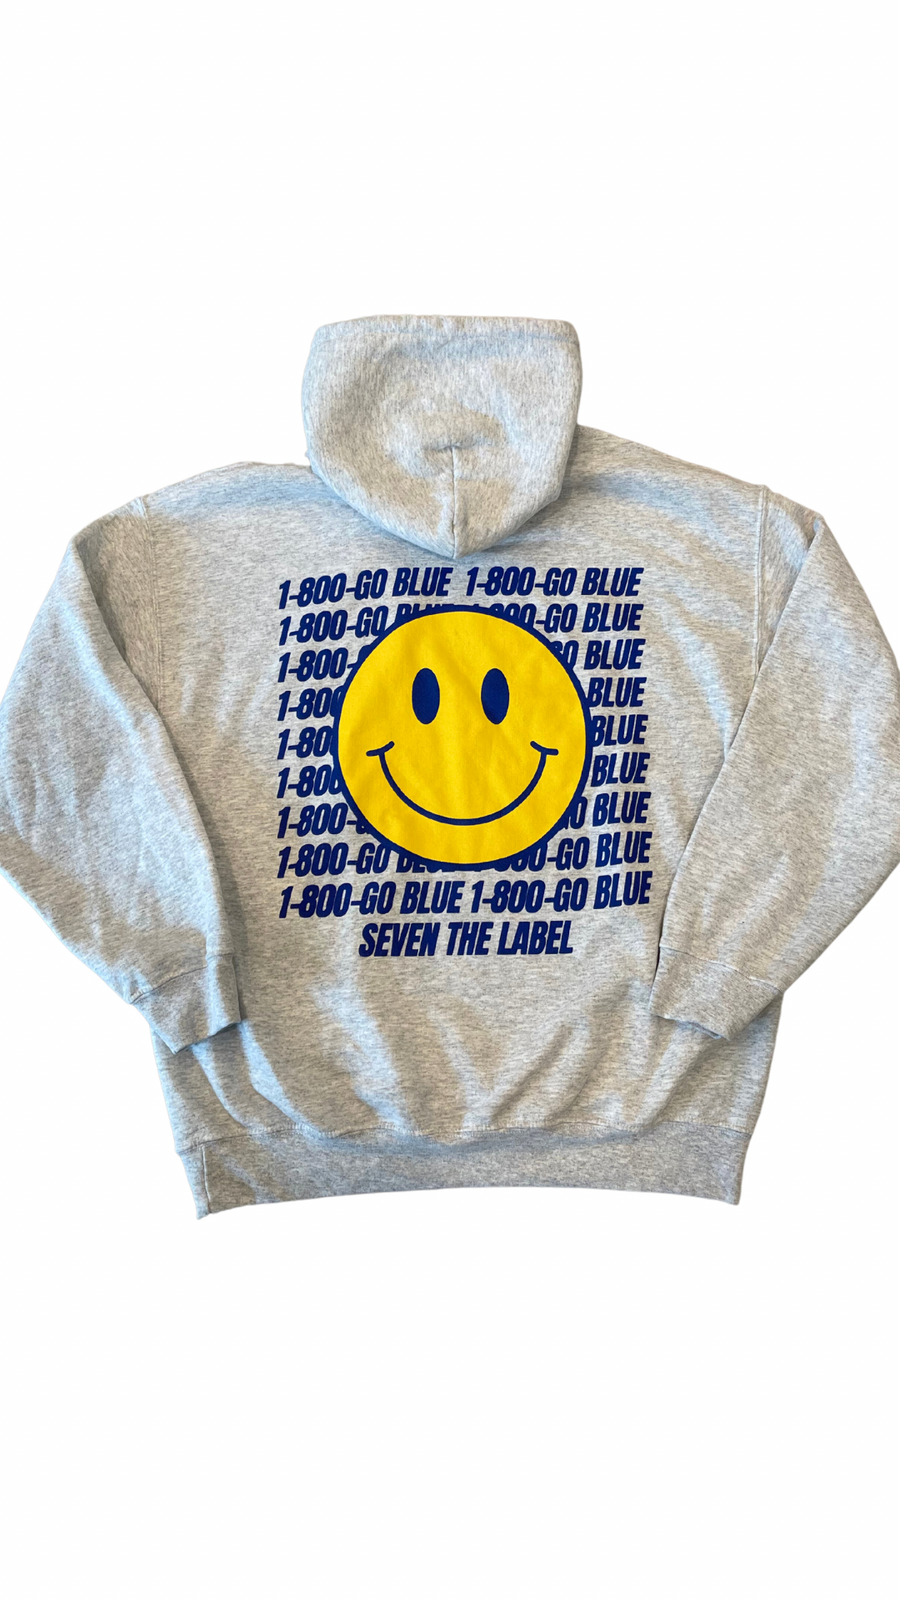 1-800 go blue hoodie